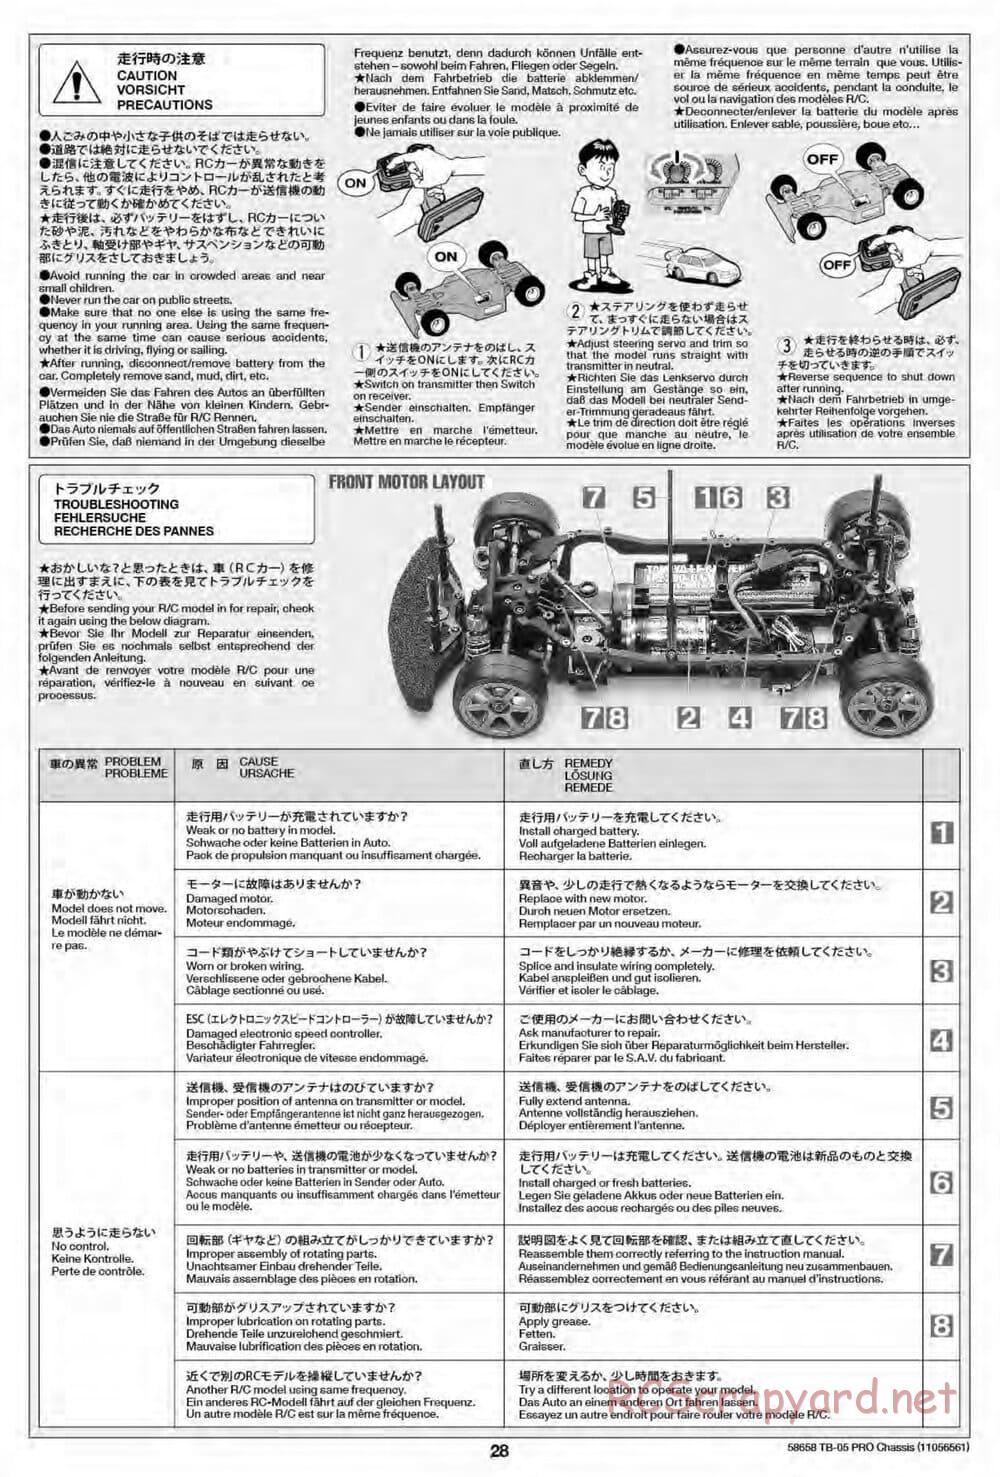 Tamiya - TB-05 Pro Chassis - Manual - Page 28